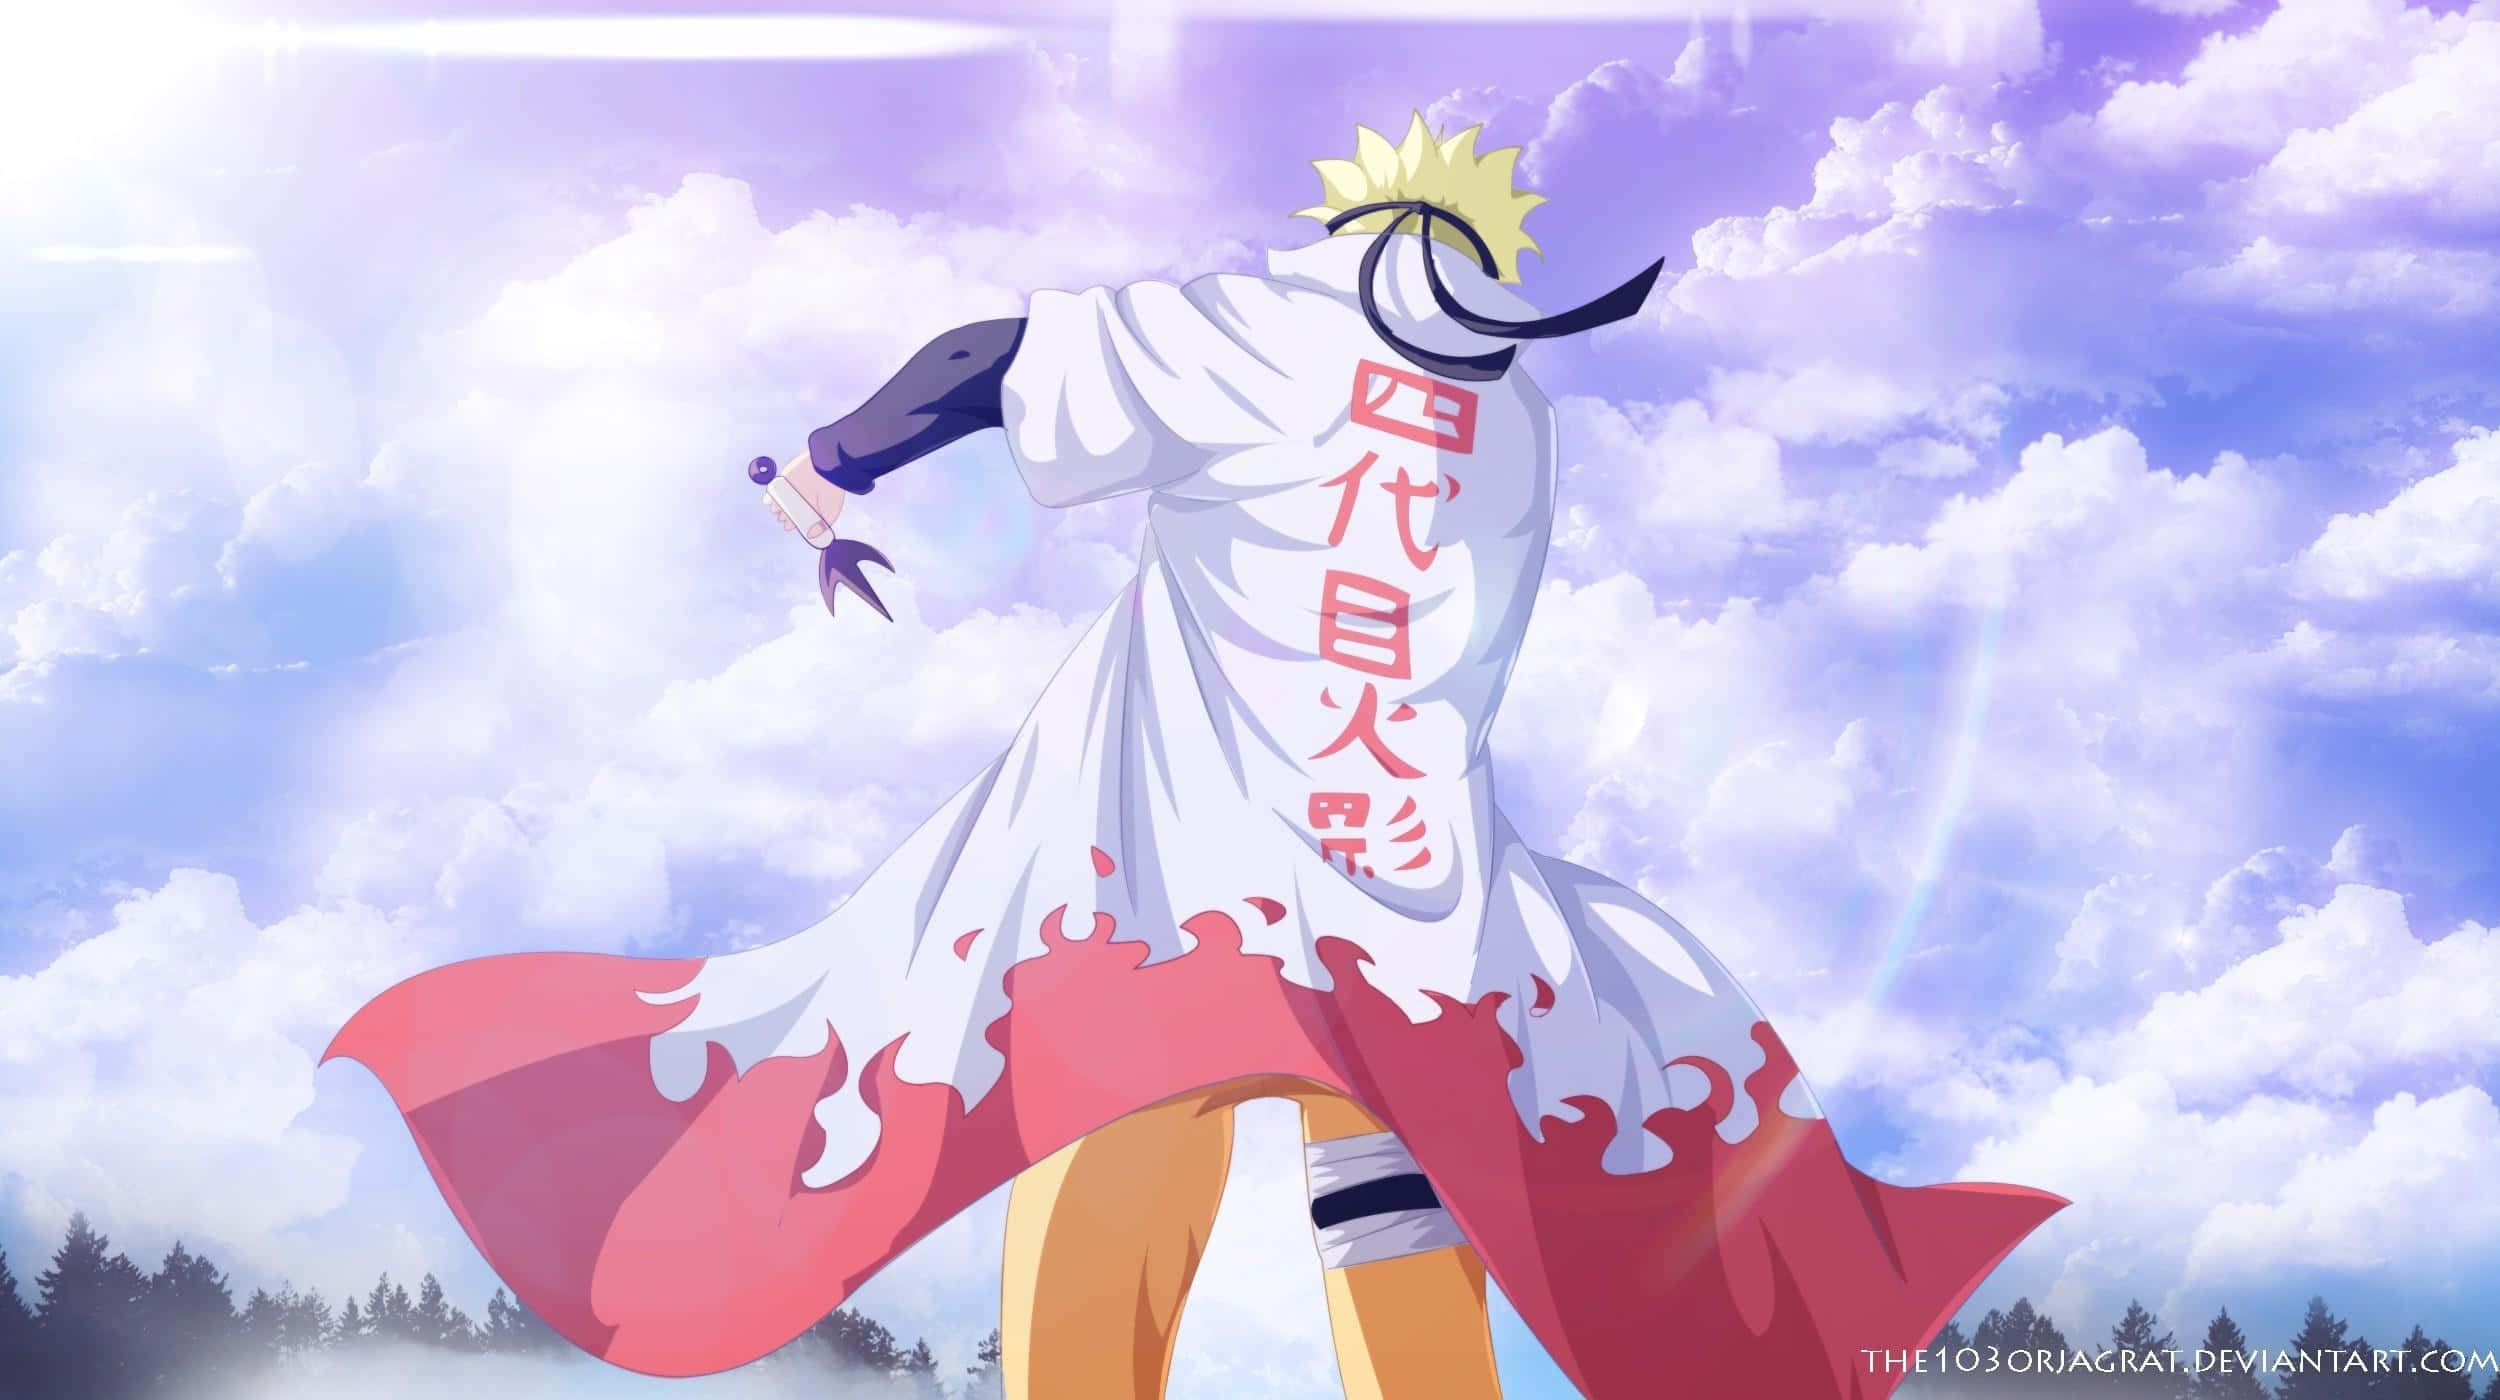 Etøjeblik Af Mod Og Beslutsomhed, Da Naruto Uzumaki Står På Toppen Af Et Bjerg I Landet Med Ilden. Wallpaper